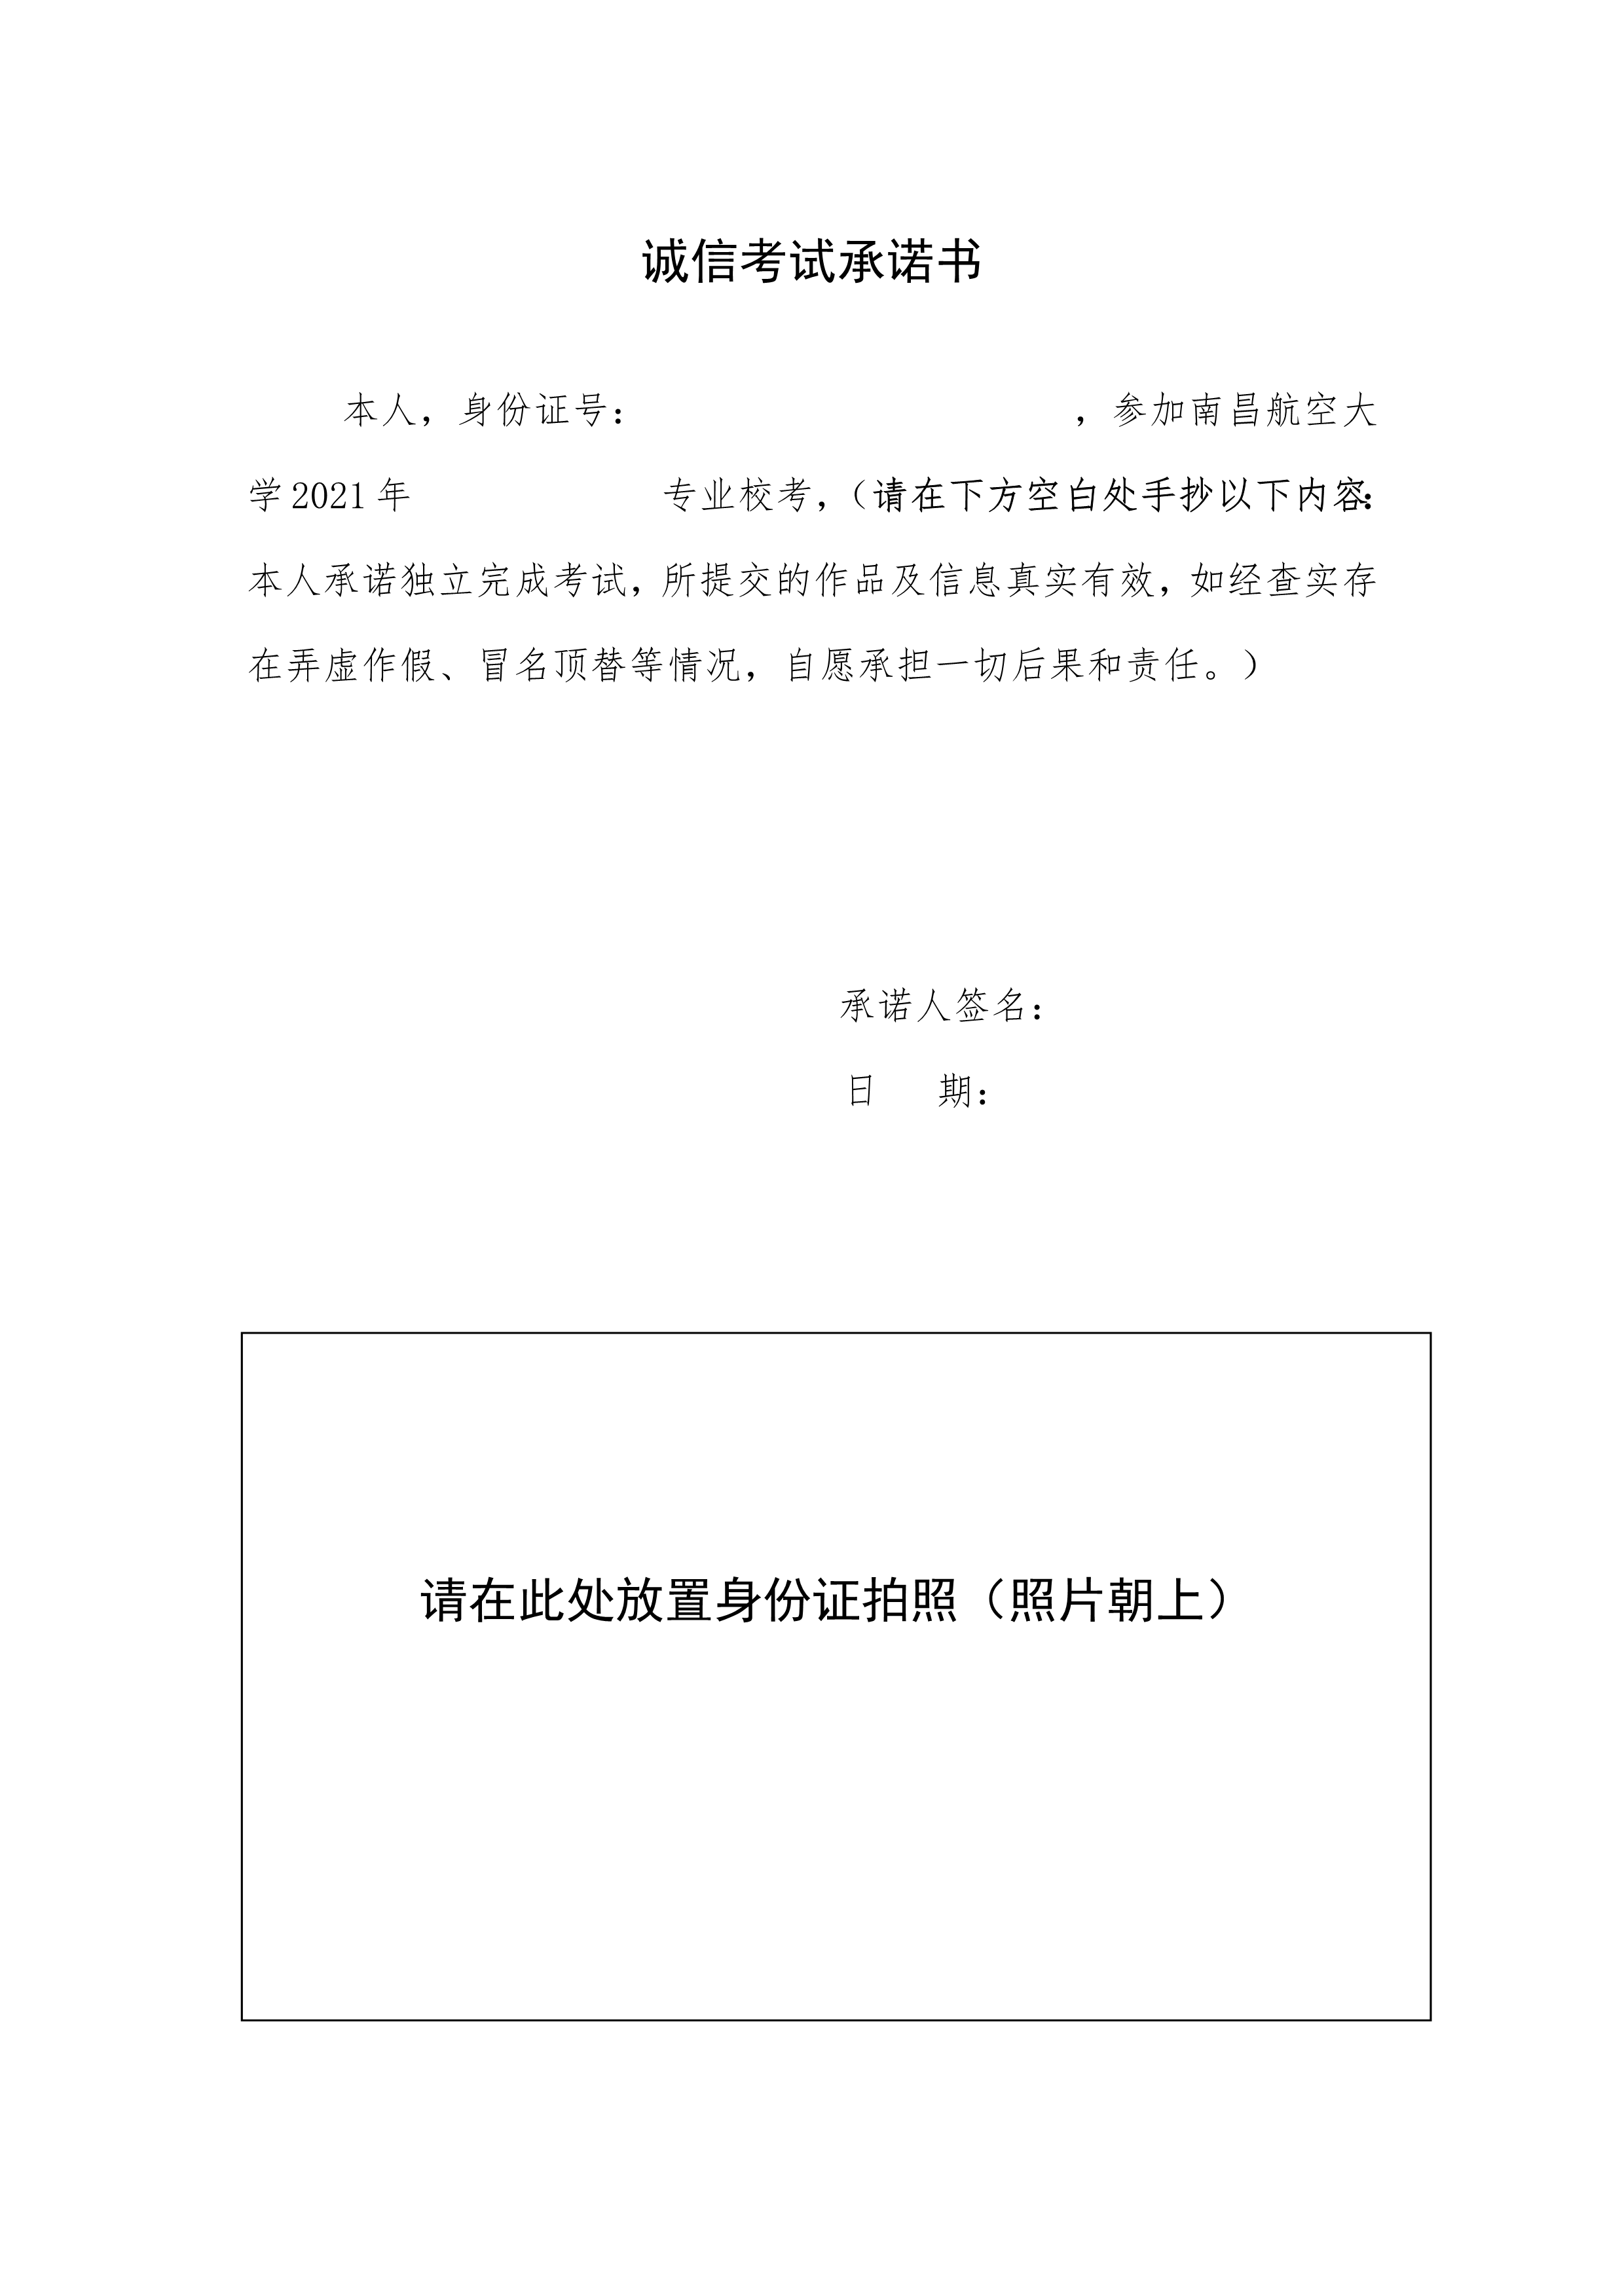 附件2：南昌航空大学2021年校考诚信考试承诺书_1.png